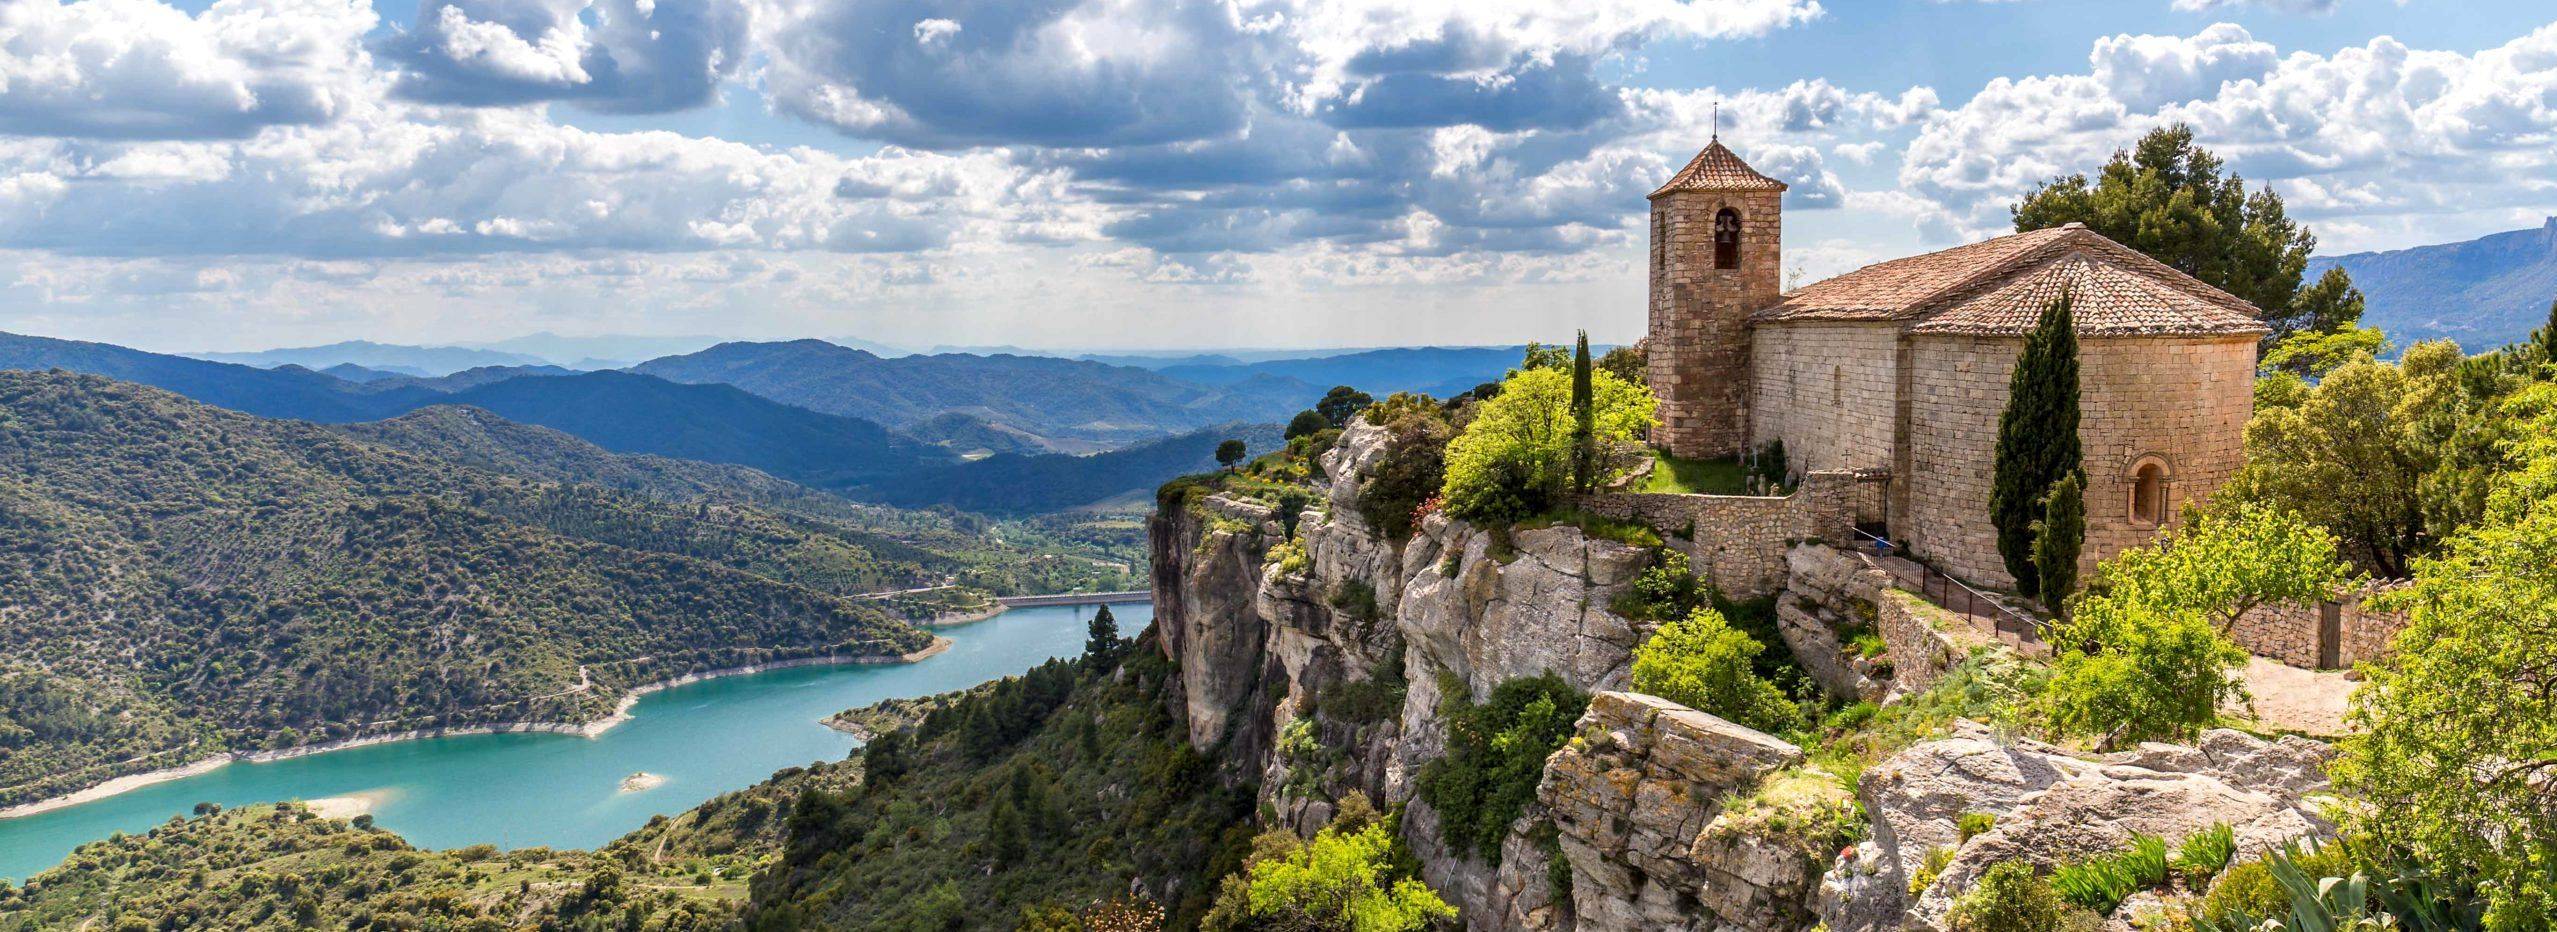 Découverte, romantisme et aventure à travers les paysages les plus secrets de la Catalogne